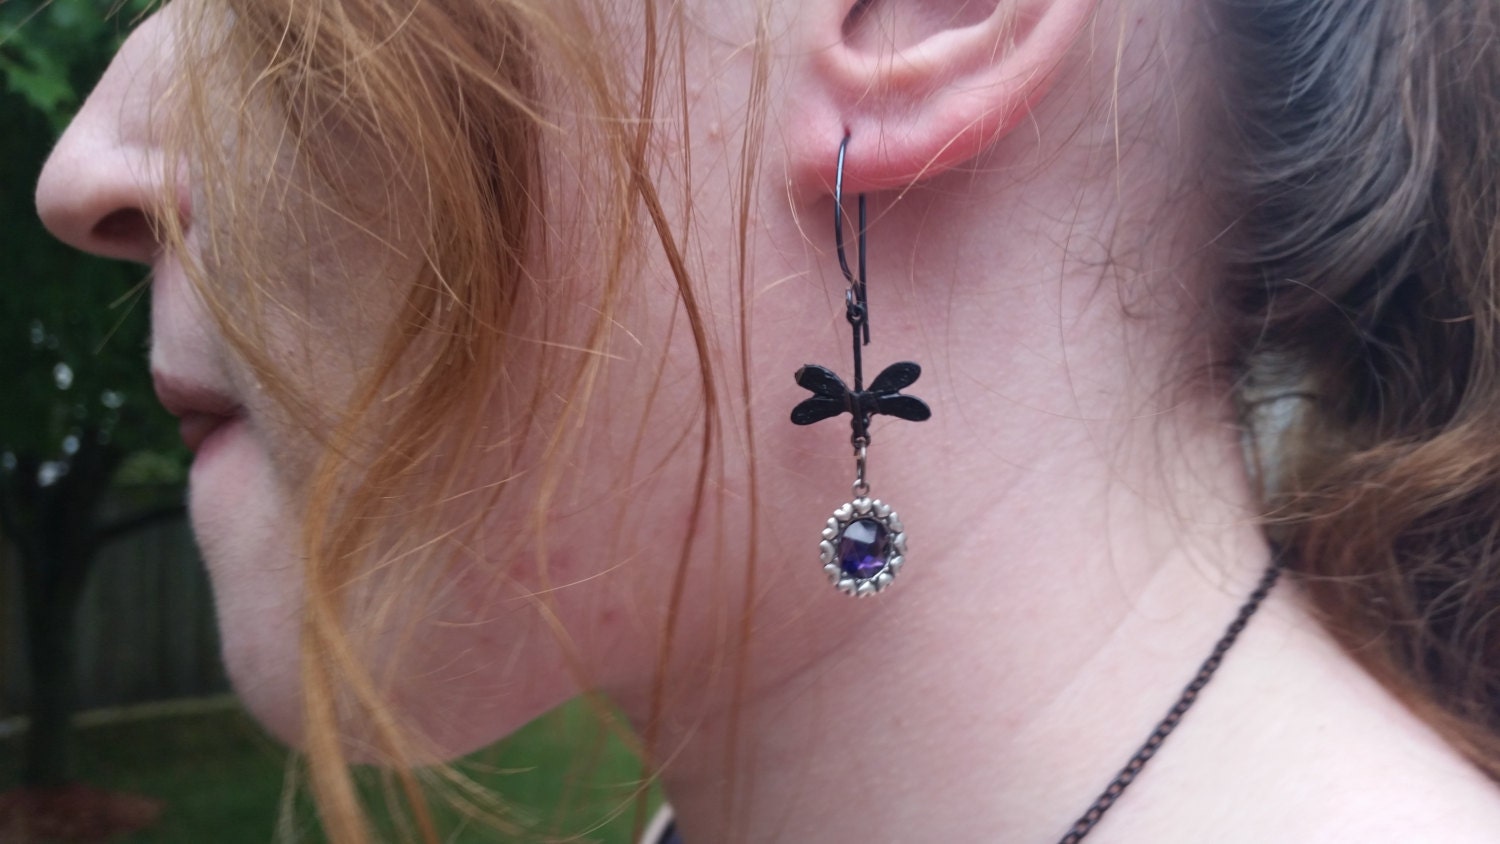 Black bird Earrings, Black dragonfly earrings, Purple Earrings, Goth Earrings, bridesmaid earrings, Gothic, Christmas in July, Jewelry gifts